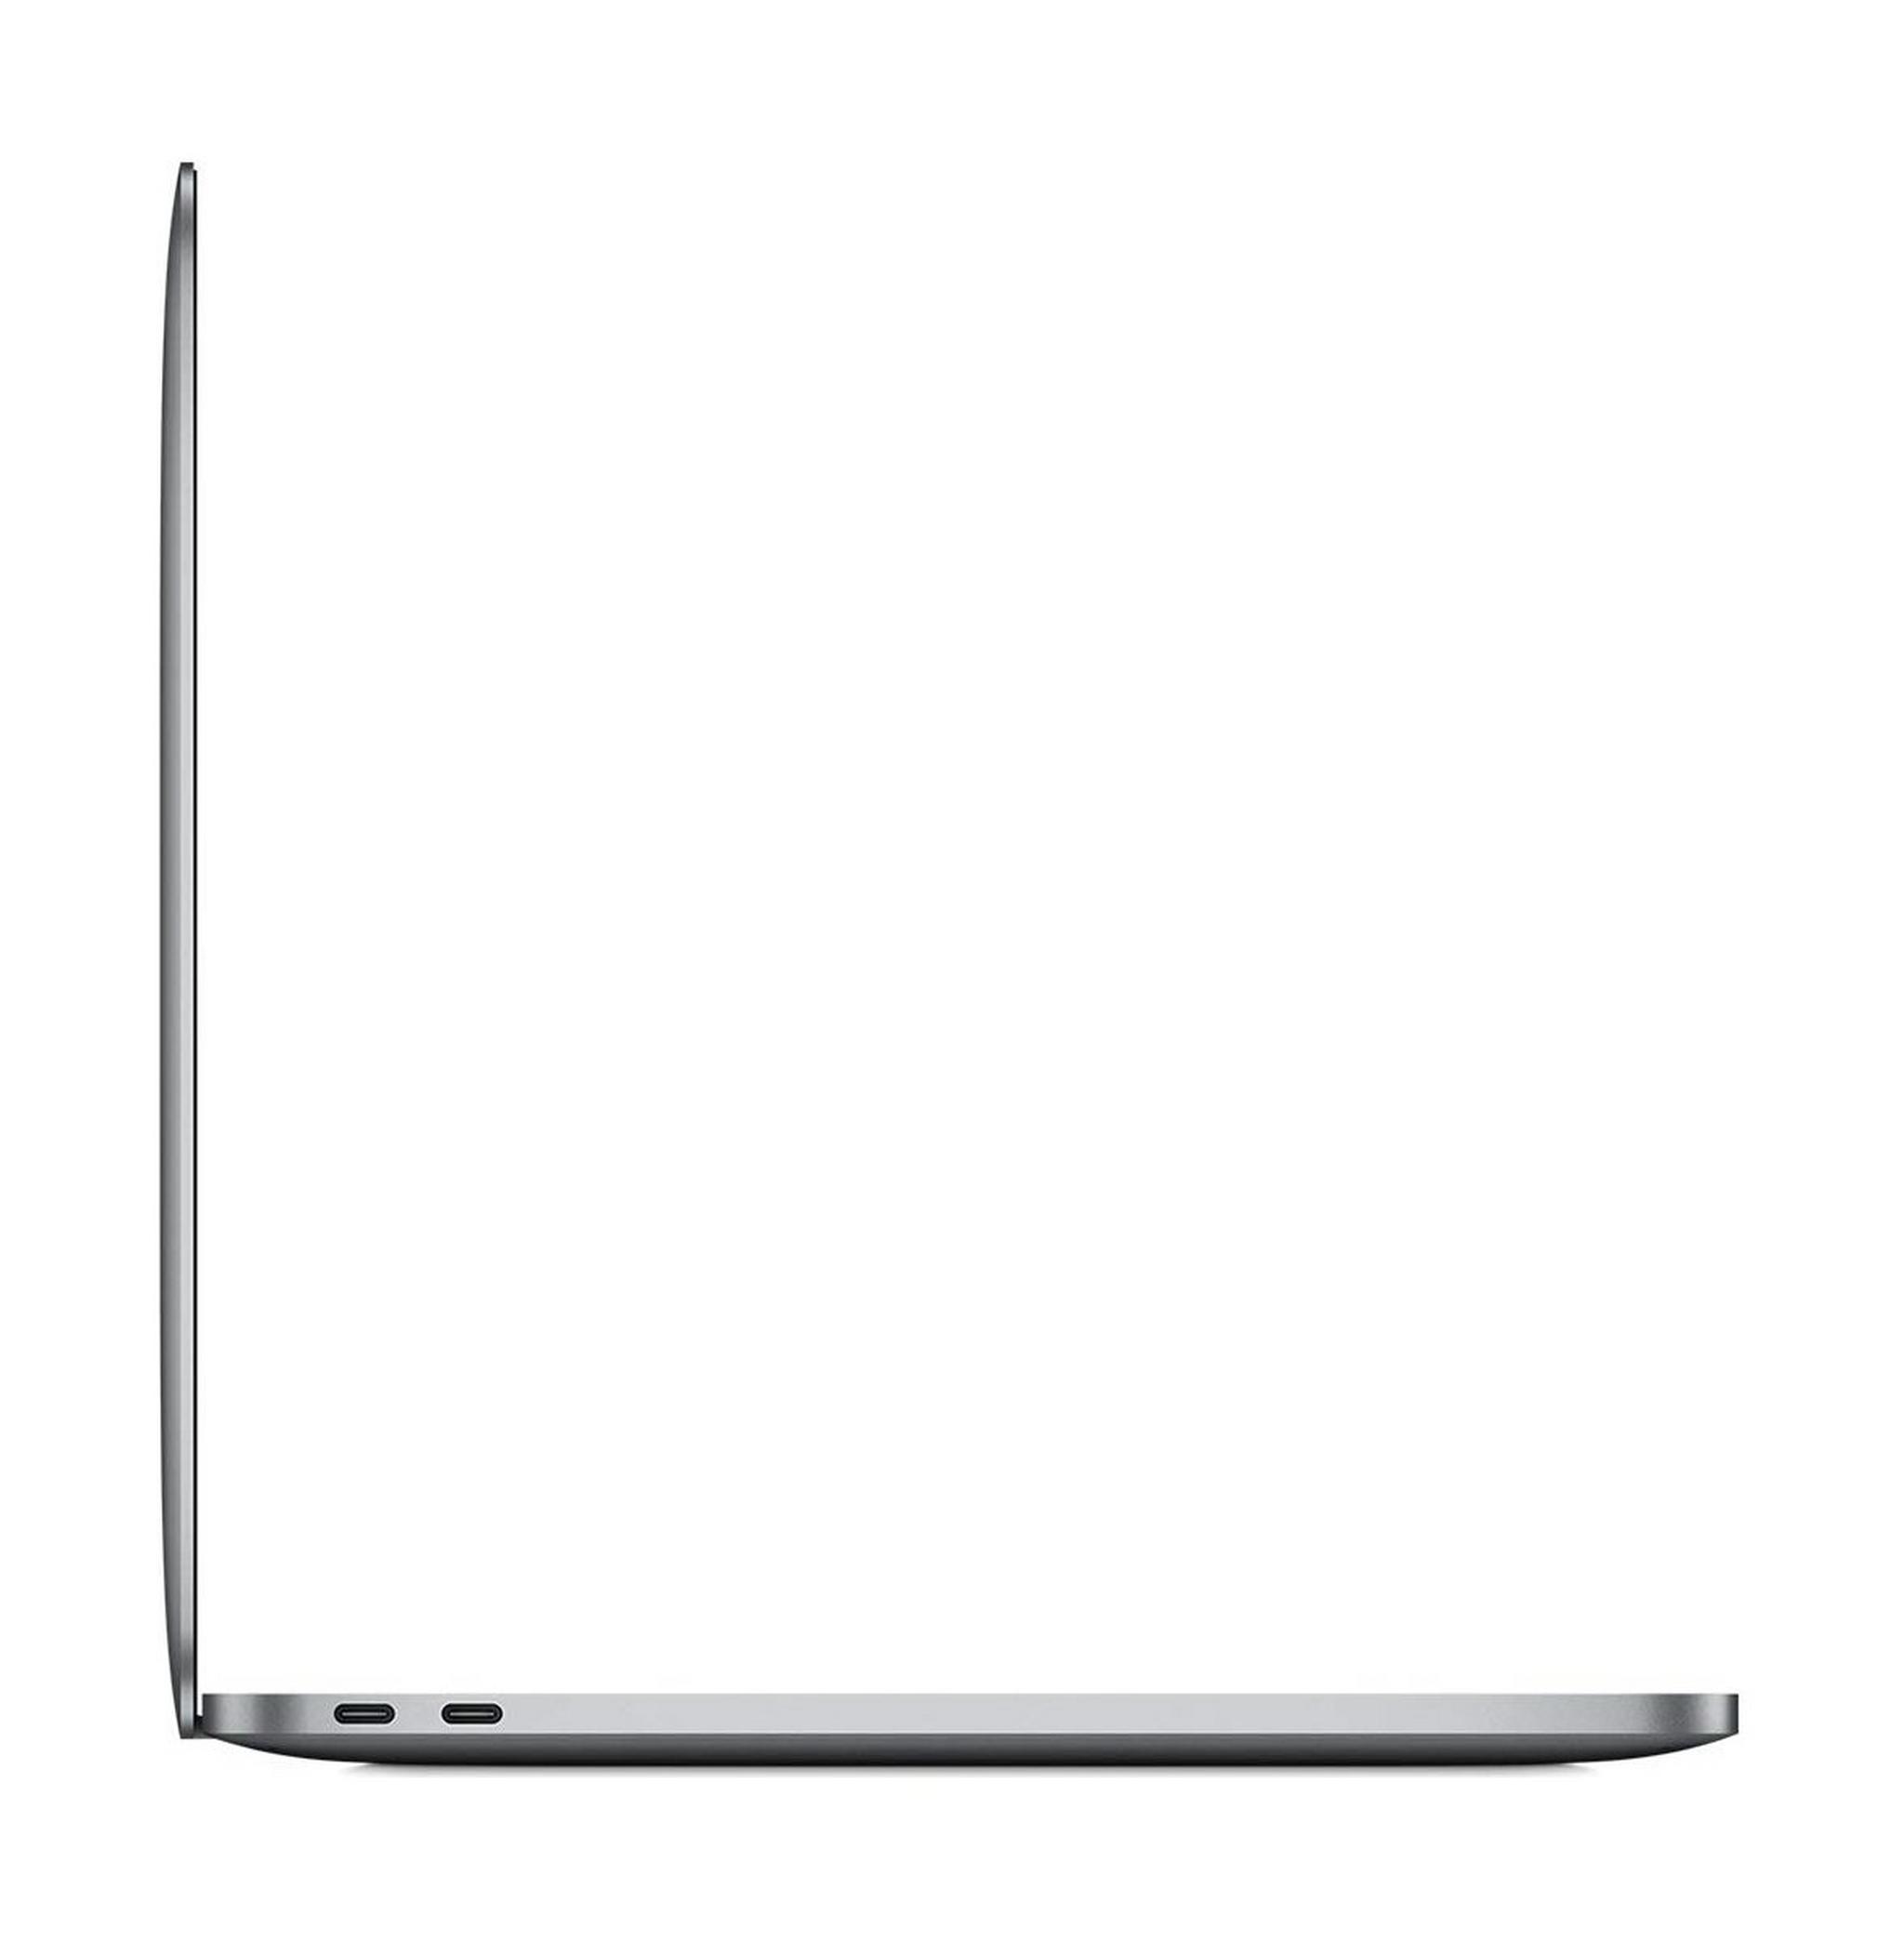 Apple Macbook Pro Core i9 9th Gen. 16GB RAM 1TB SSD 16" Laptop - Space Grey